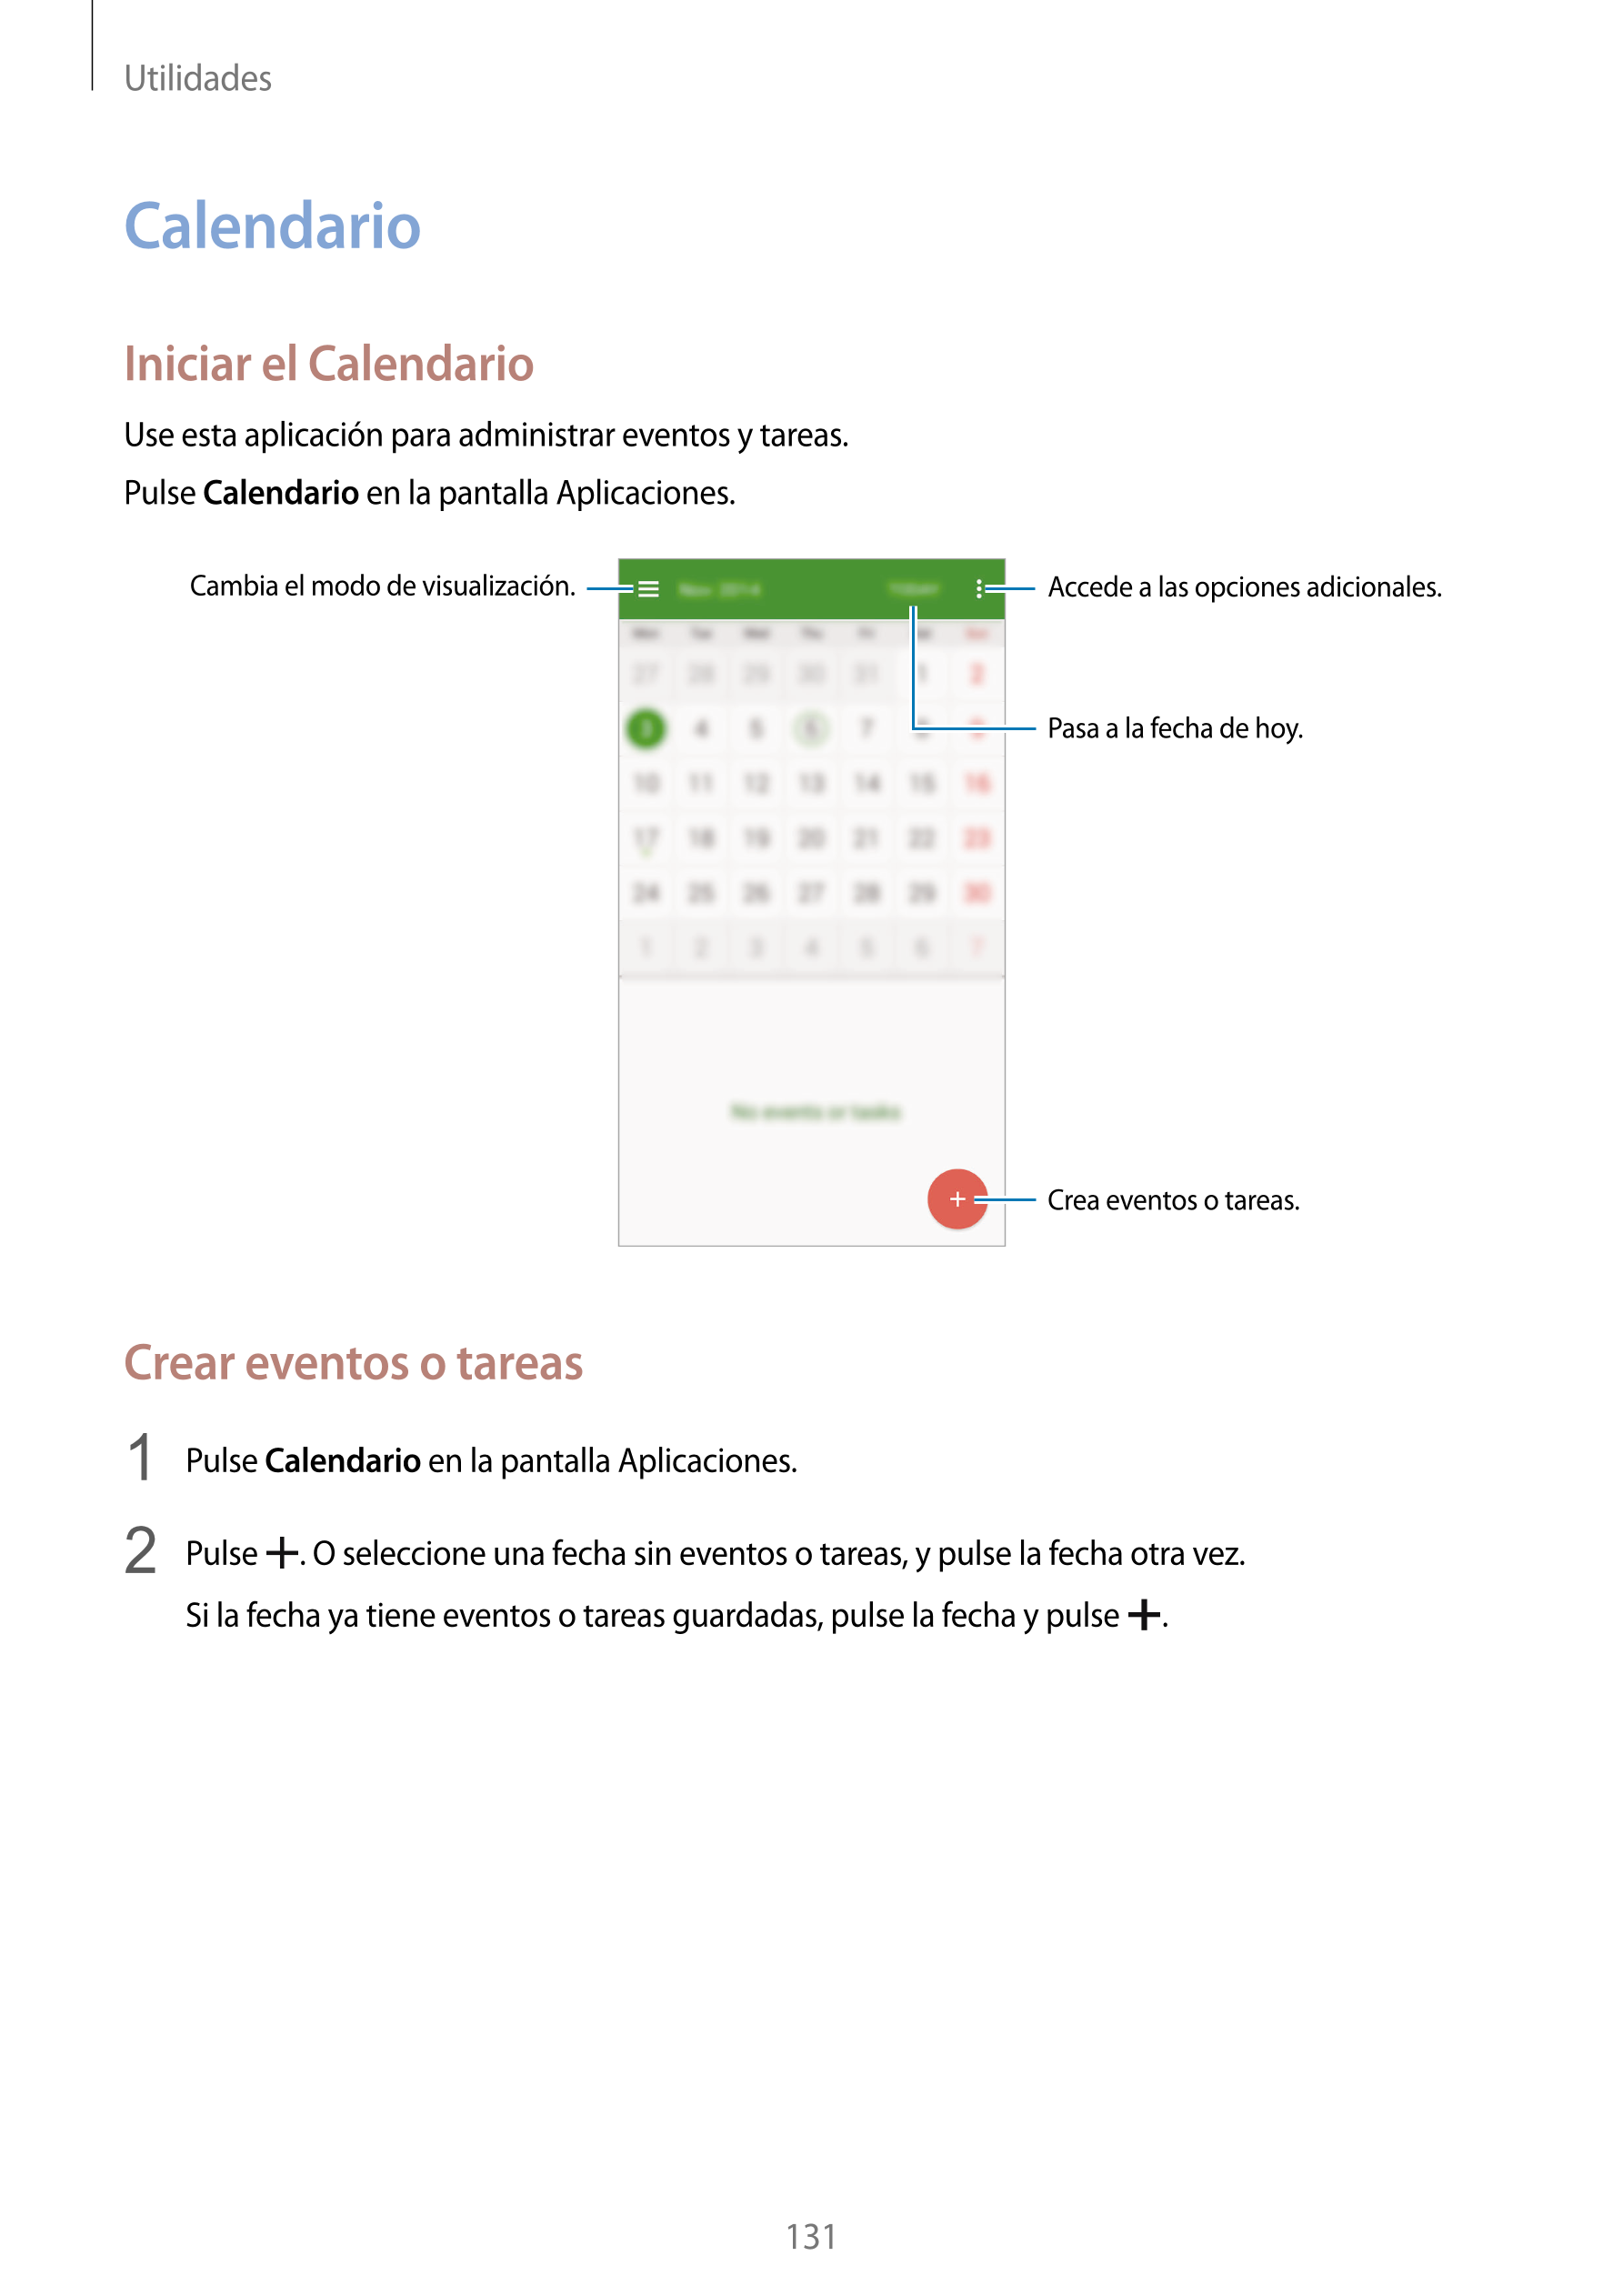 Utilidades
Calendario
Iniciar el Calendario
Use esta aplicación para administrar eventos y tareas.
Pulse  Calendario en la panta